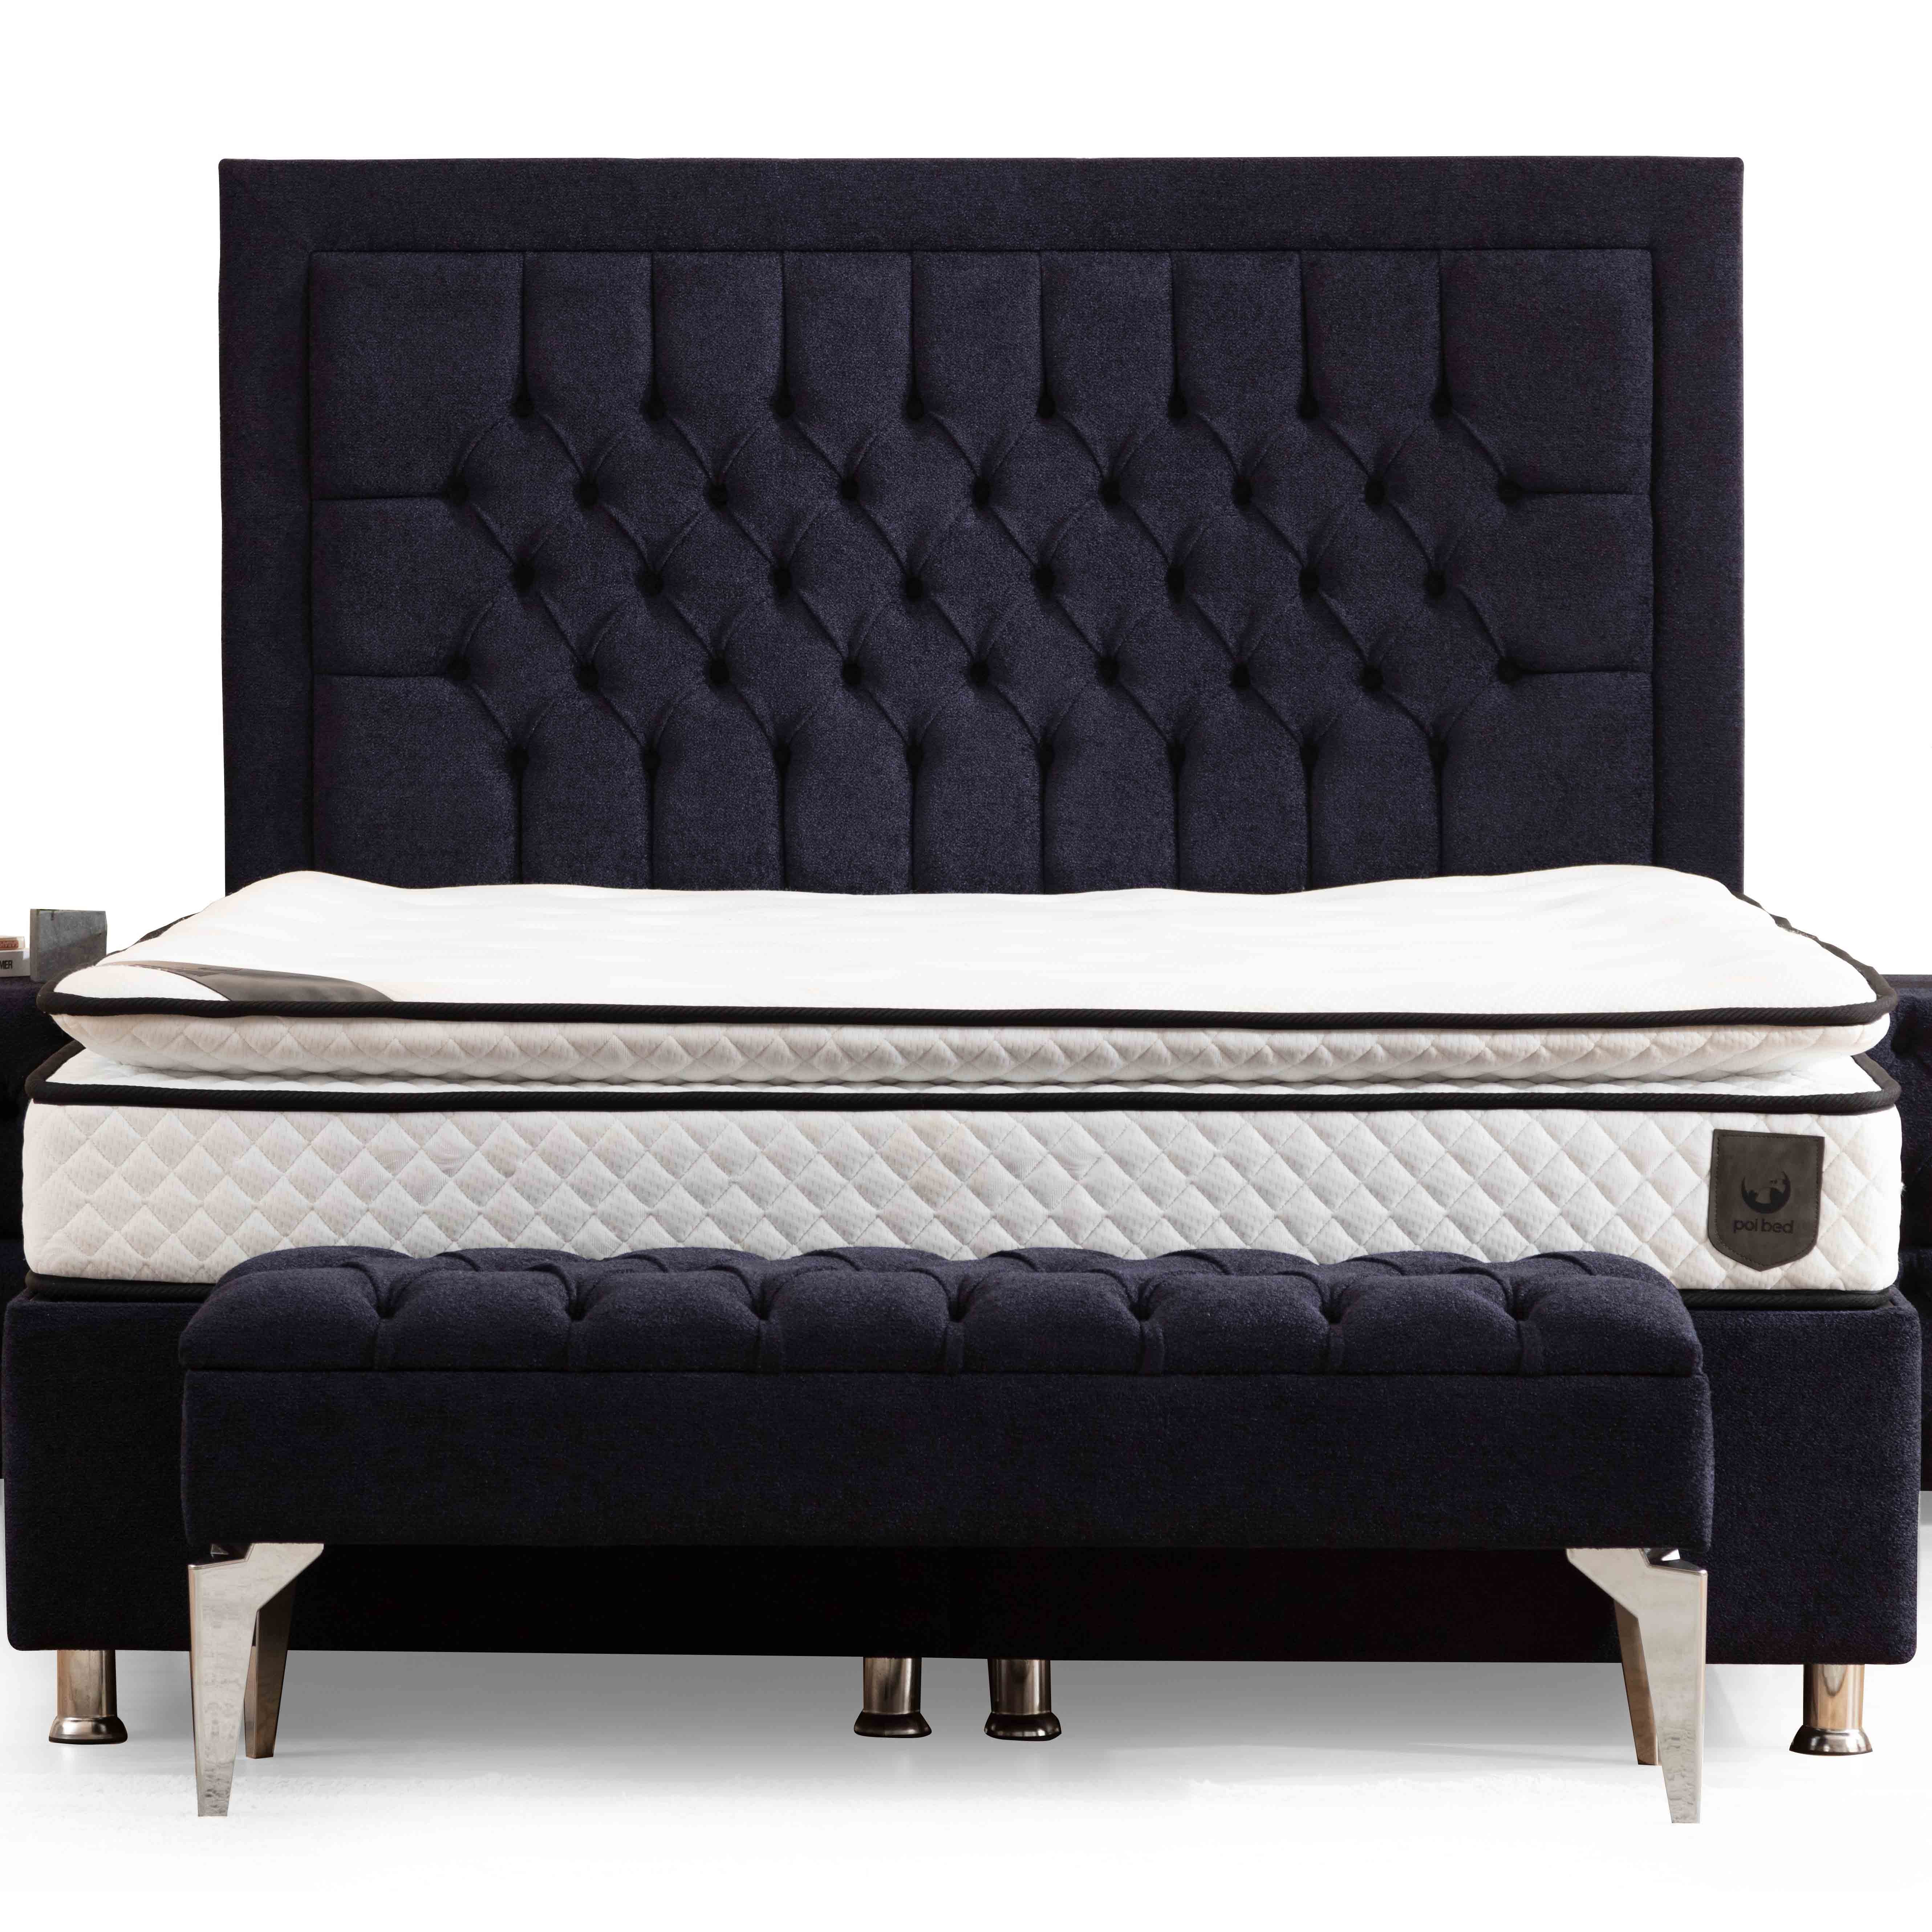 Astom Bed With Storage 120x200 cm